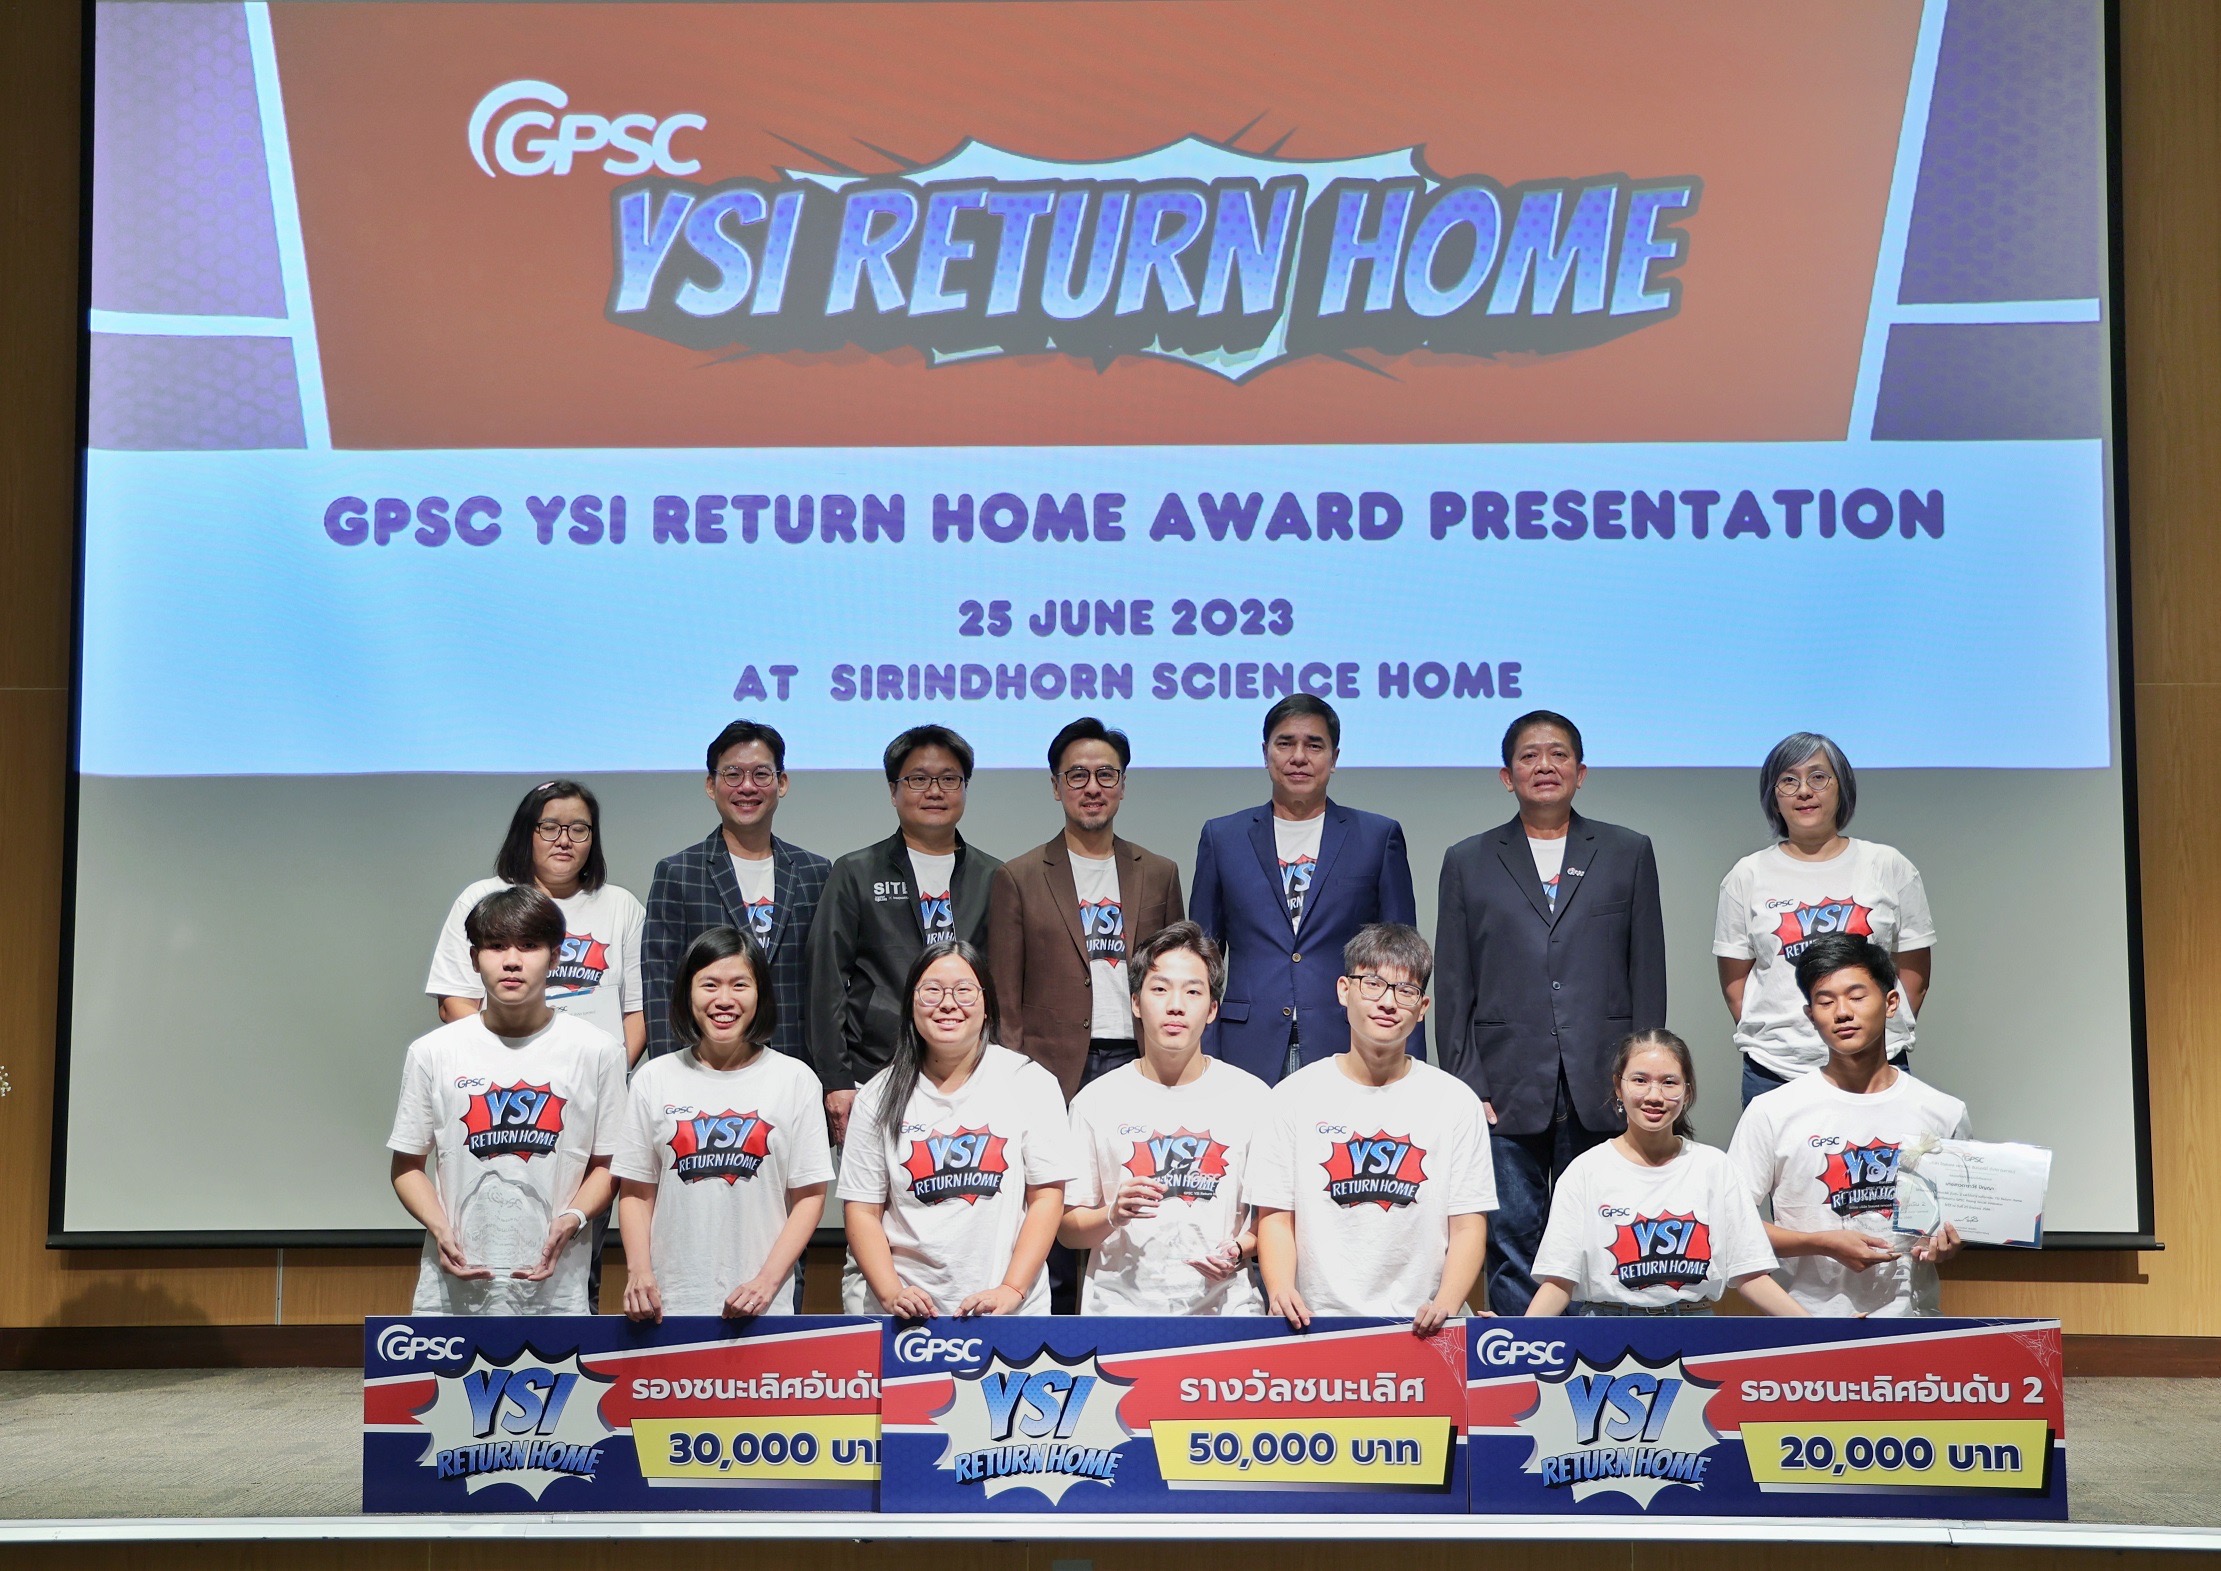 GPSC โชว์ 3 ผลงานโดดเด่น คว้ารางวัลชนะเลิศ YSI Return Home  ปั้นสตาร์ทอัพรุ่นใหม่ สร้างผลงานสิ่งประดิษฐ์สู่ตลาดเชิงพาณิชย์